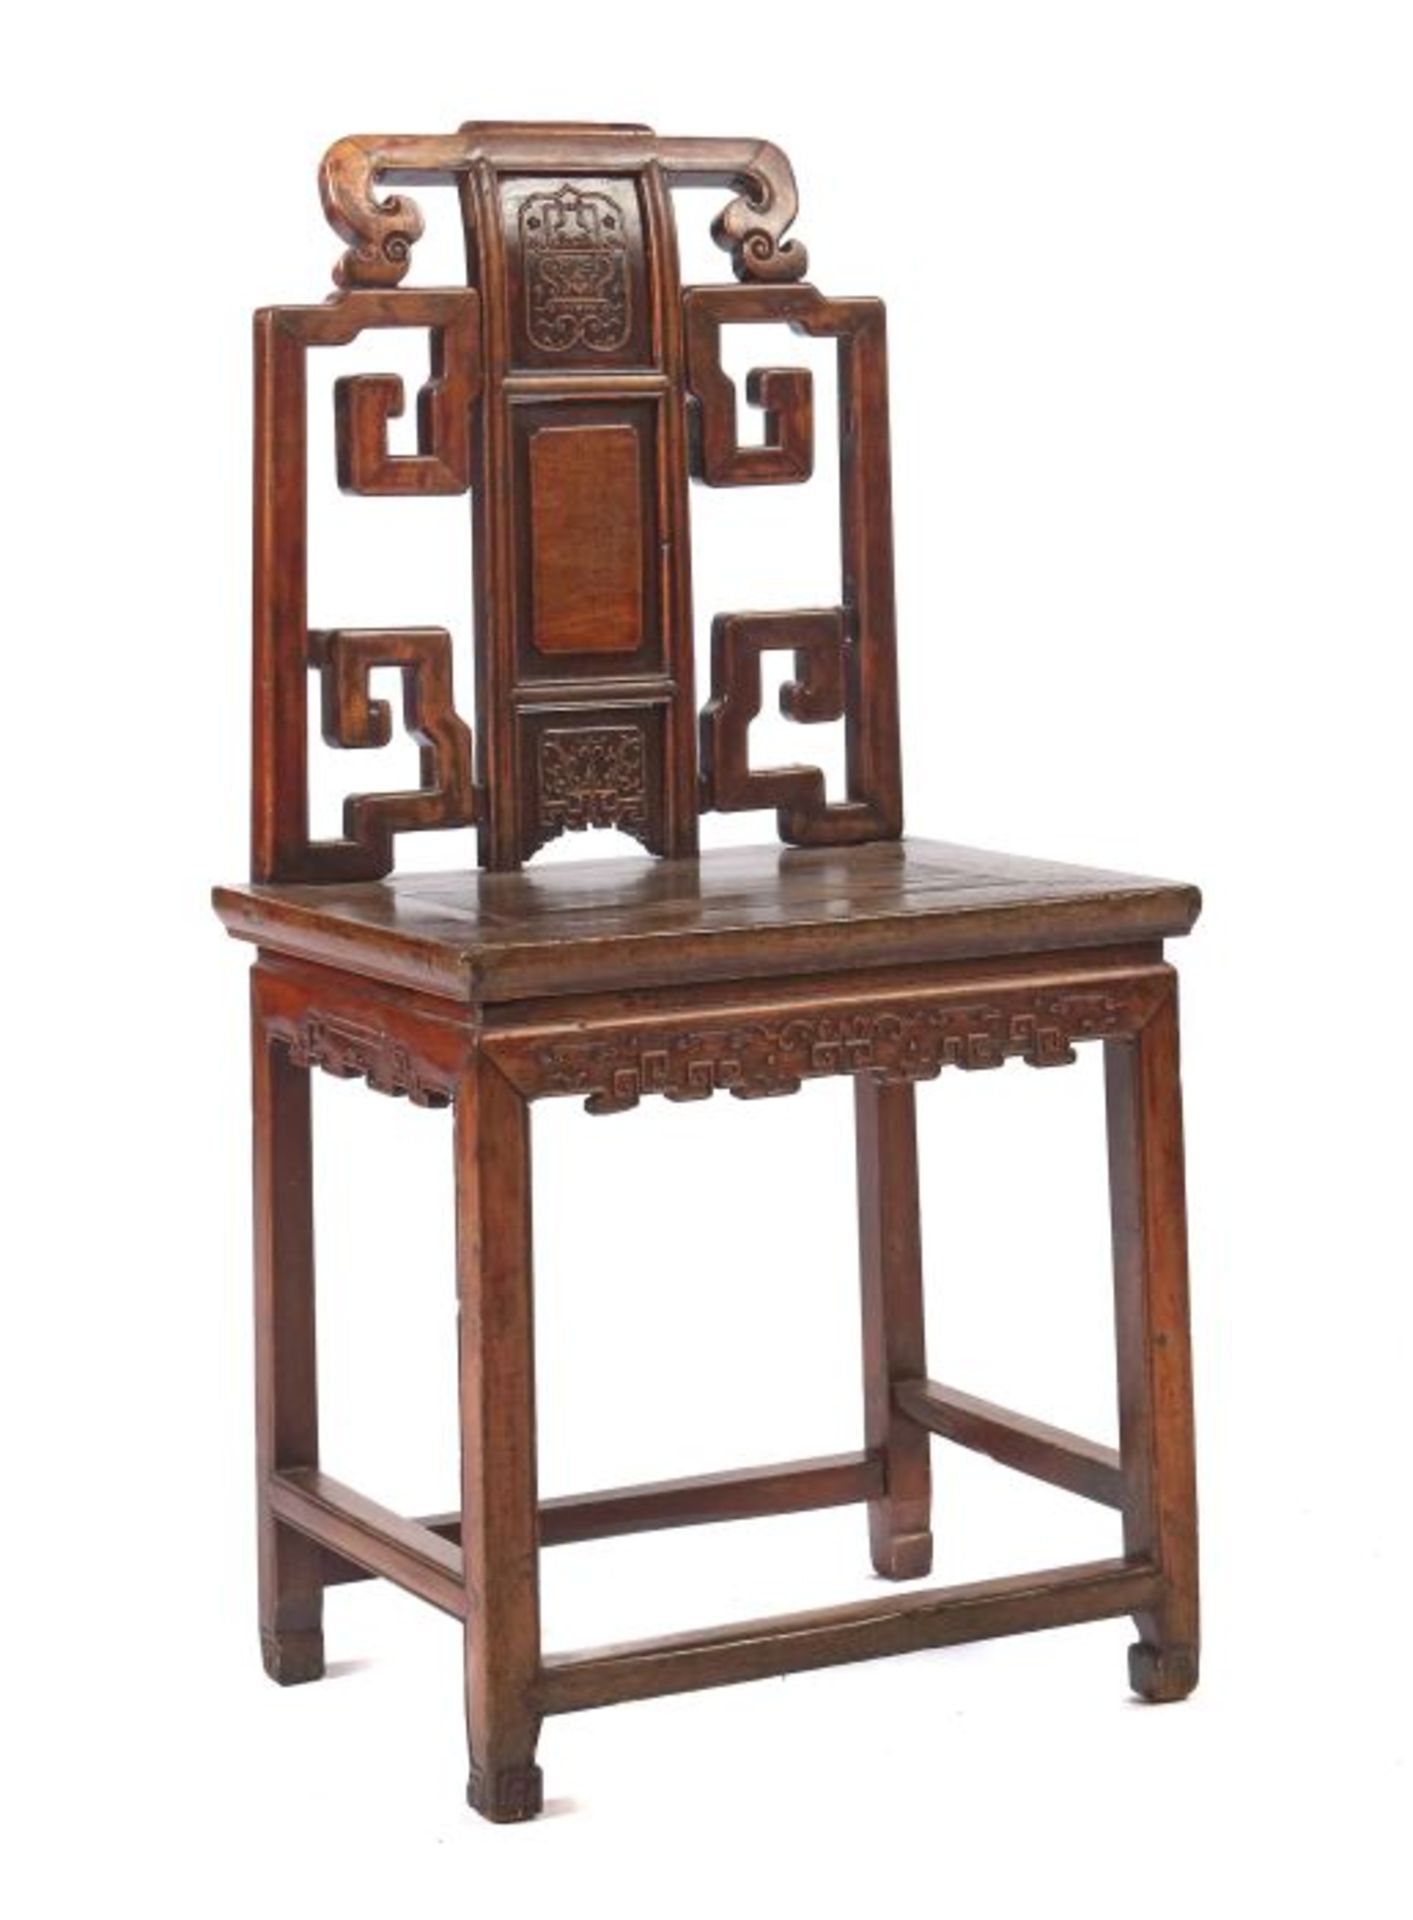 Stuhl China, w. 19. Jh., Hartholz, dunkel gebeizt, mit rechteckiger Sitzfläche, von 4 Füßen mit